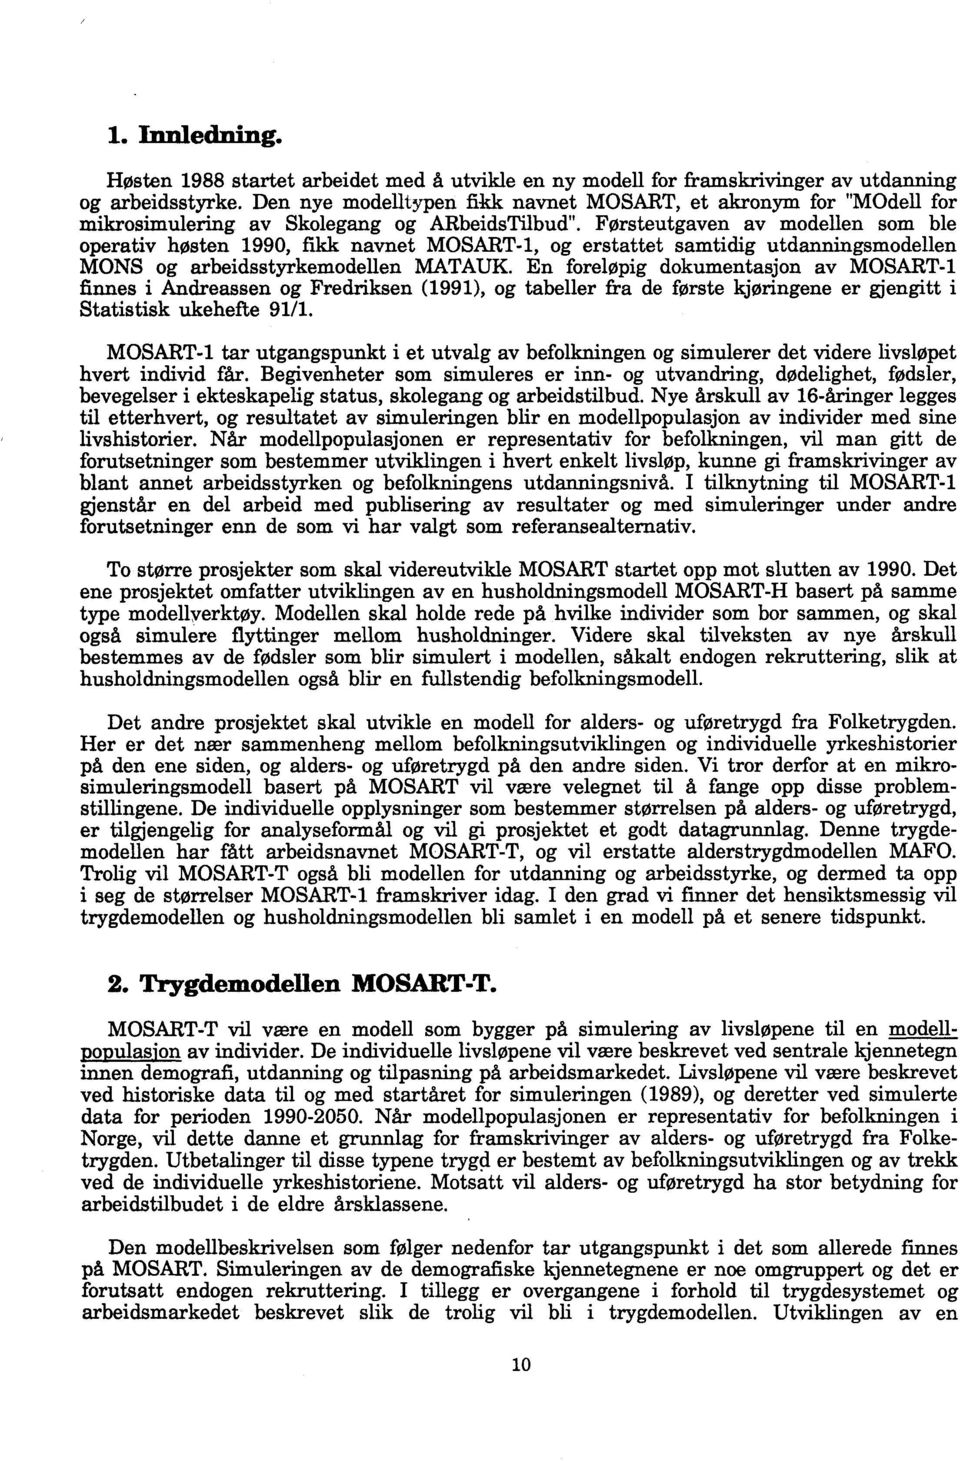 Førsteutgaven av modellen som ble operativ høsten 1990, fikk navnet MOSART4, og erstattet samtidig utdanningsmodellen MONS og arbeidsstyrkemodellen MATAUK.